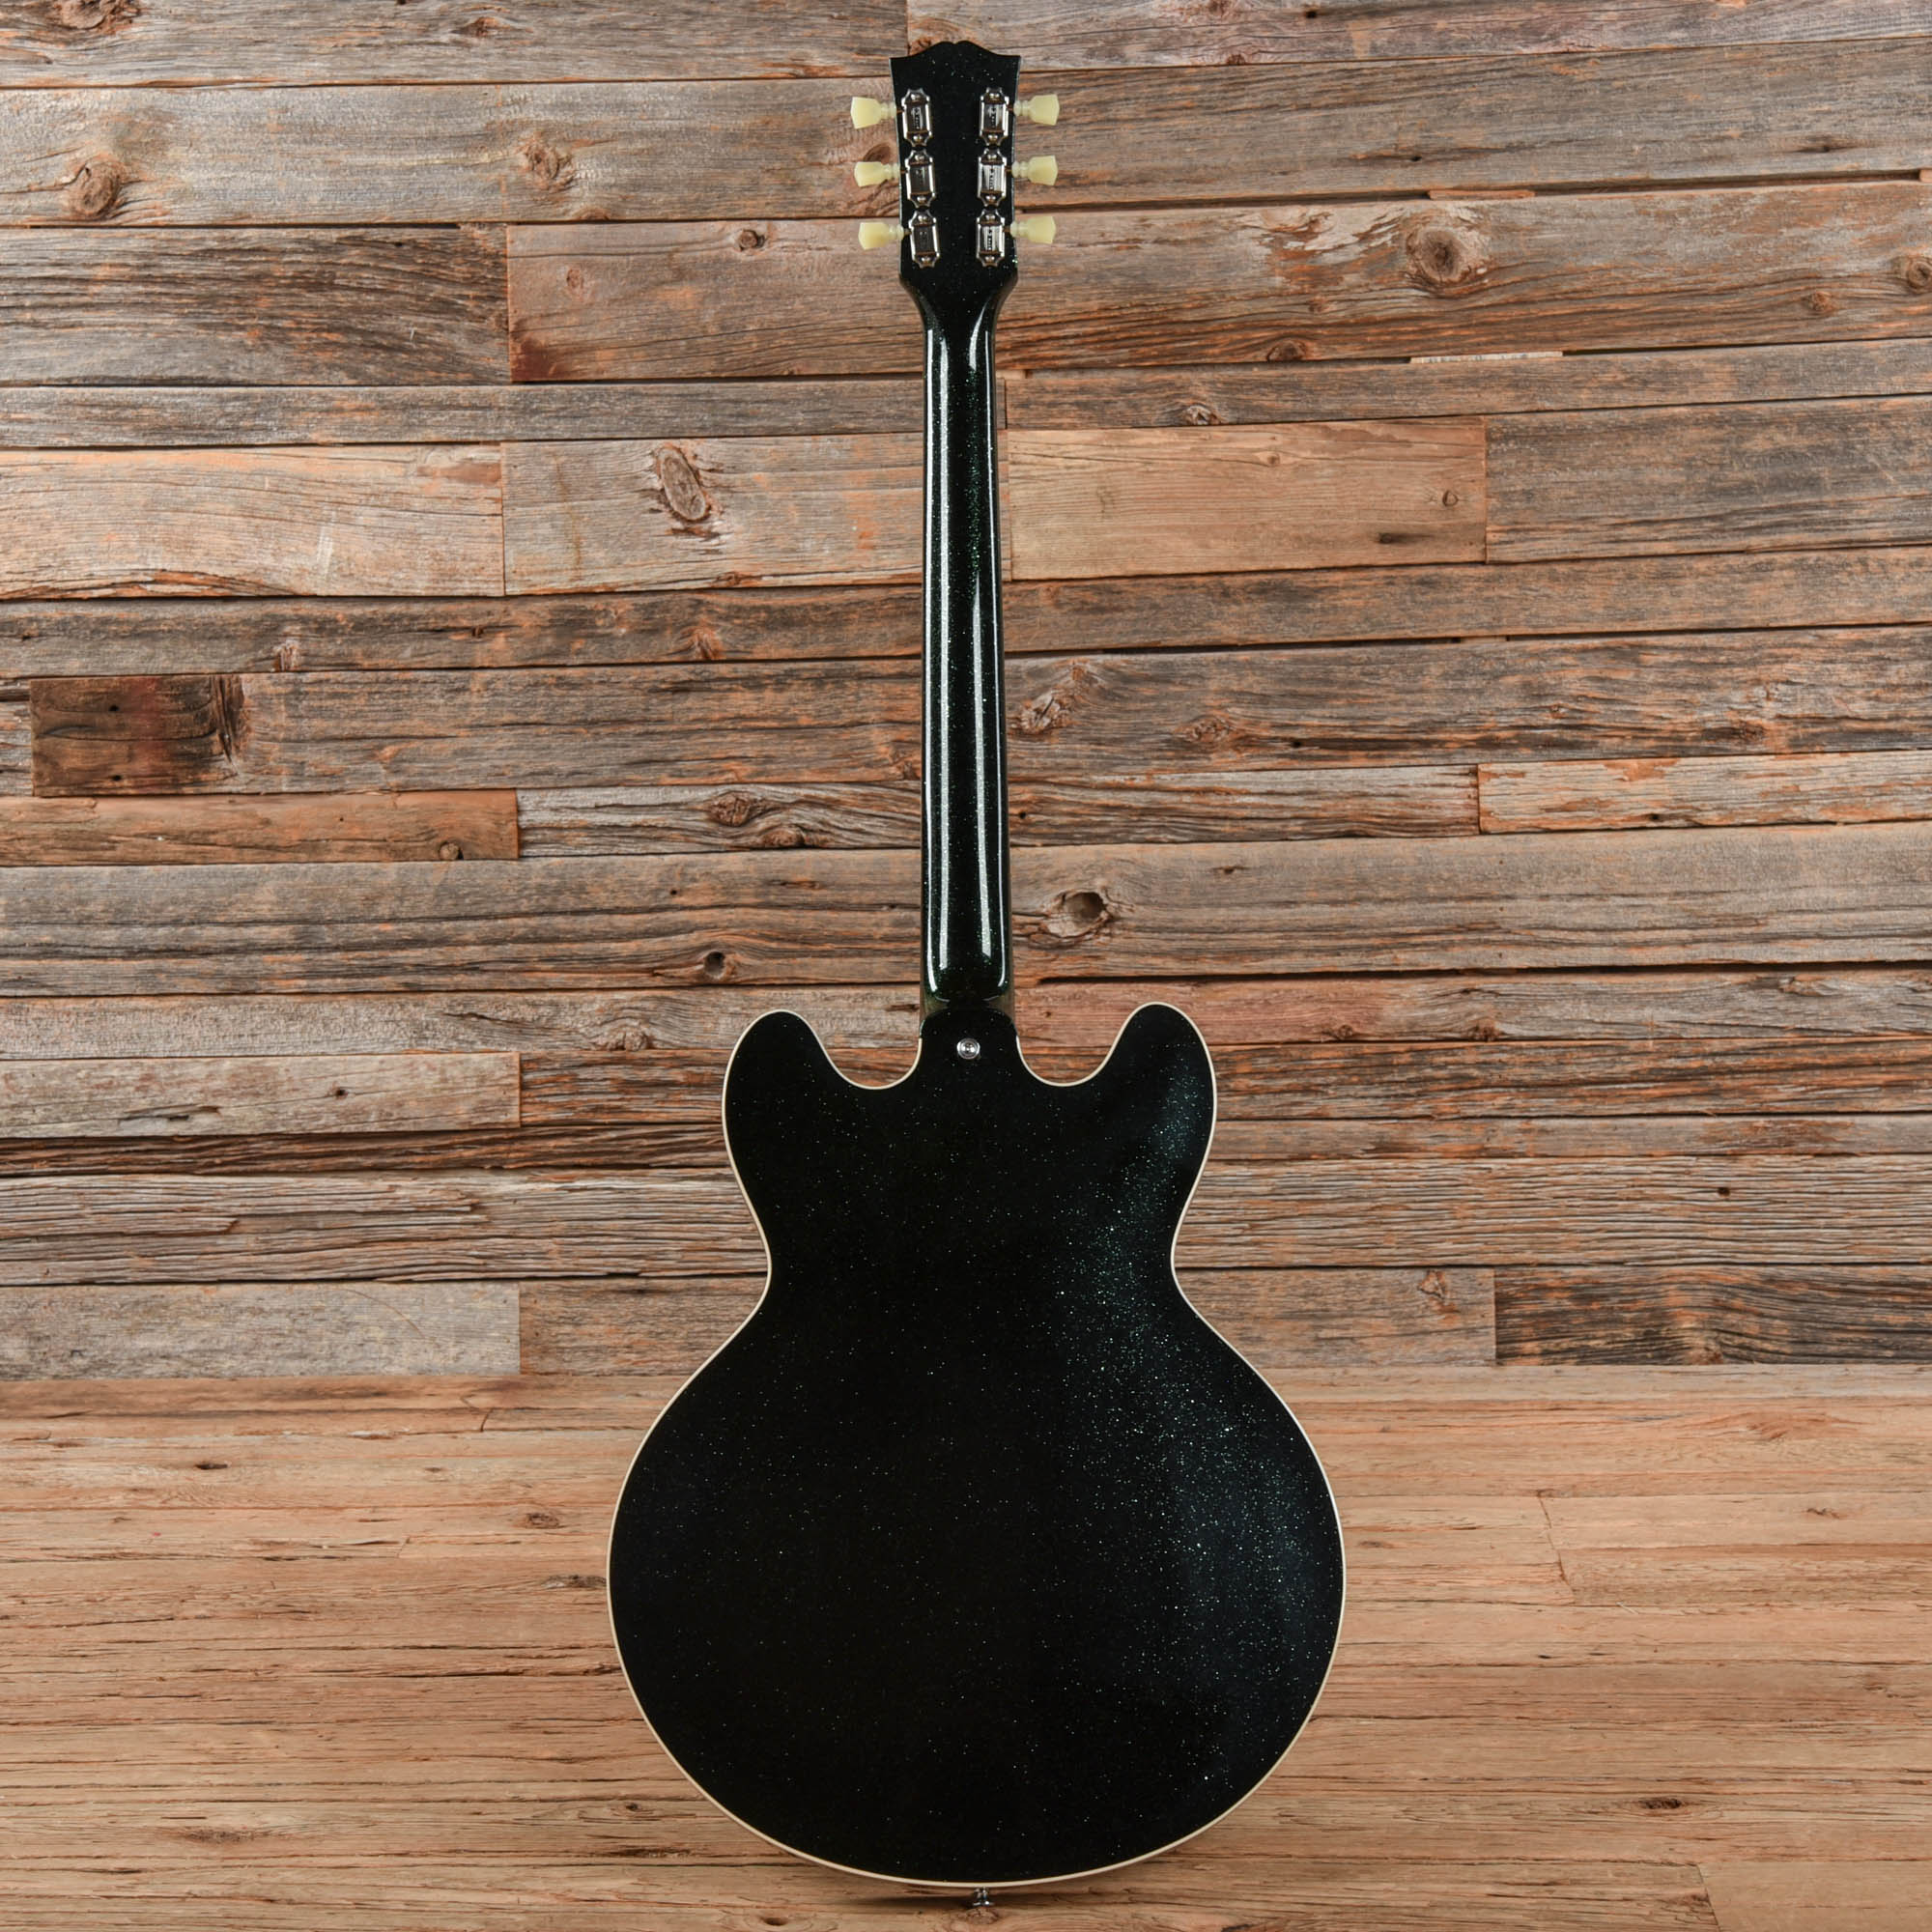 Gibson Custom 64 ES-335 Green Sparkle  LEFTY